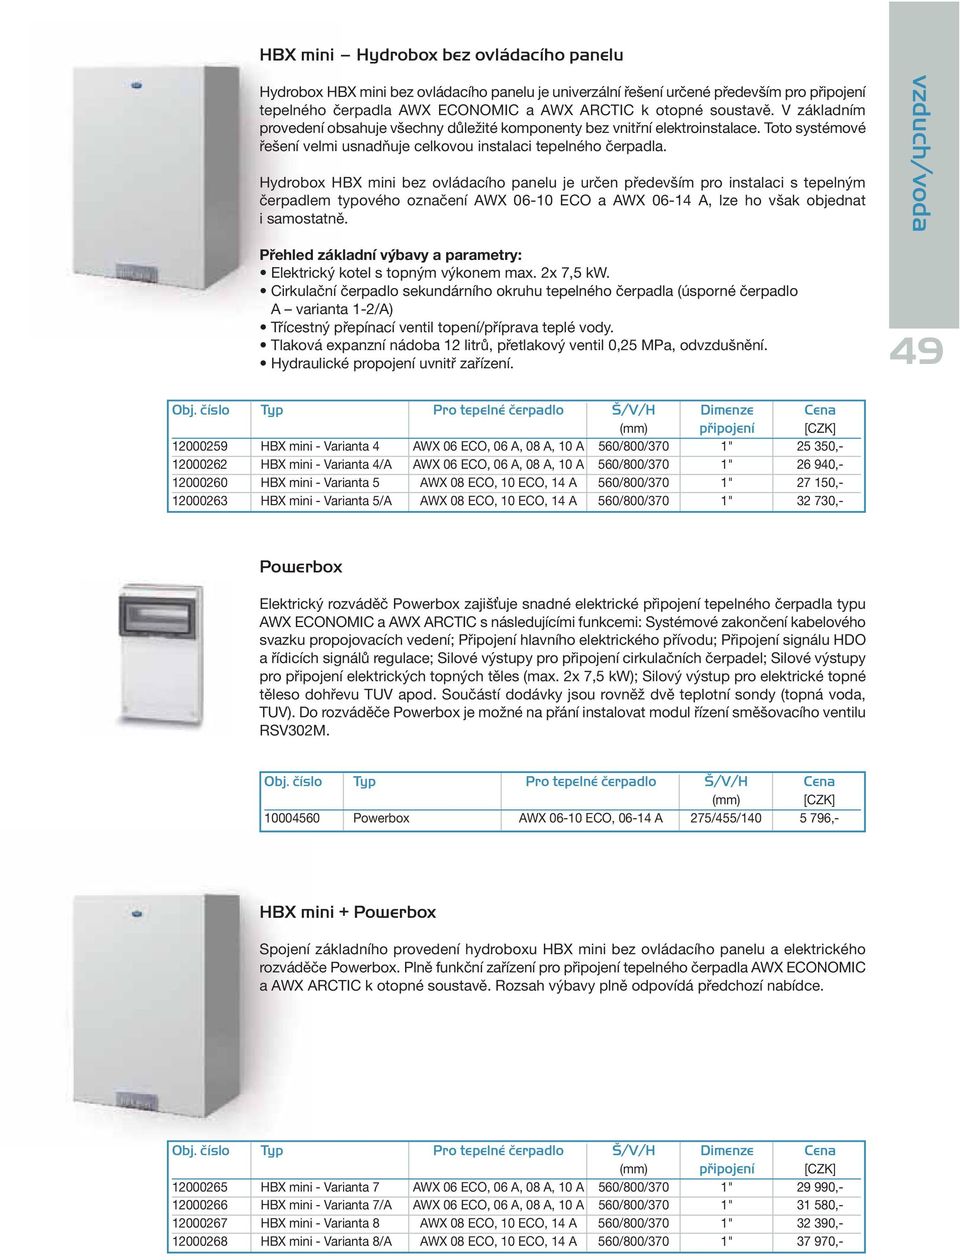 Hydrobox HBX mini bez ovládacího panelu je určen především pro instalaci s tepelným čerpadlem typového označení AWX 06-10 ECO a AWX 06-14 A, lze ho však objednat i samostatně.